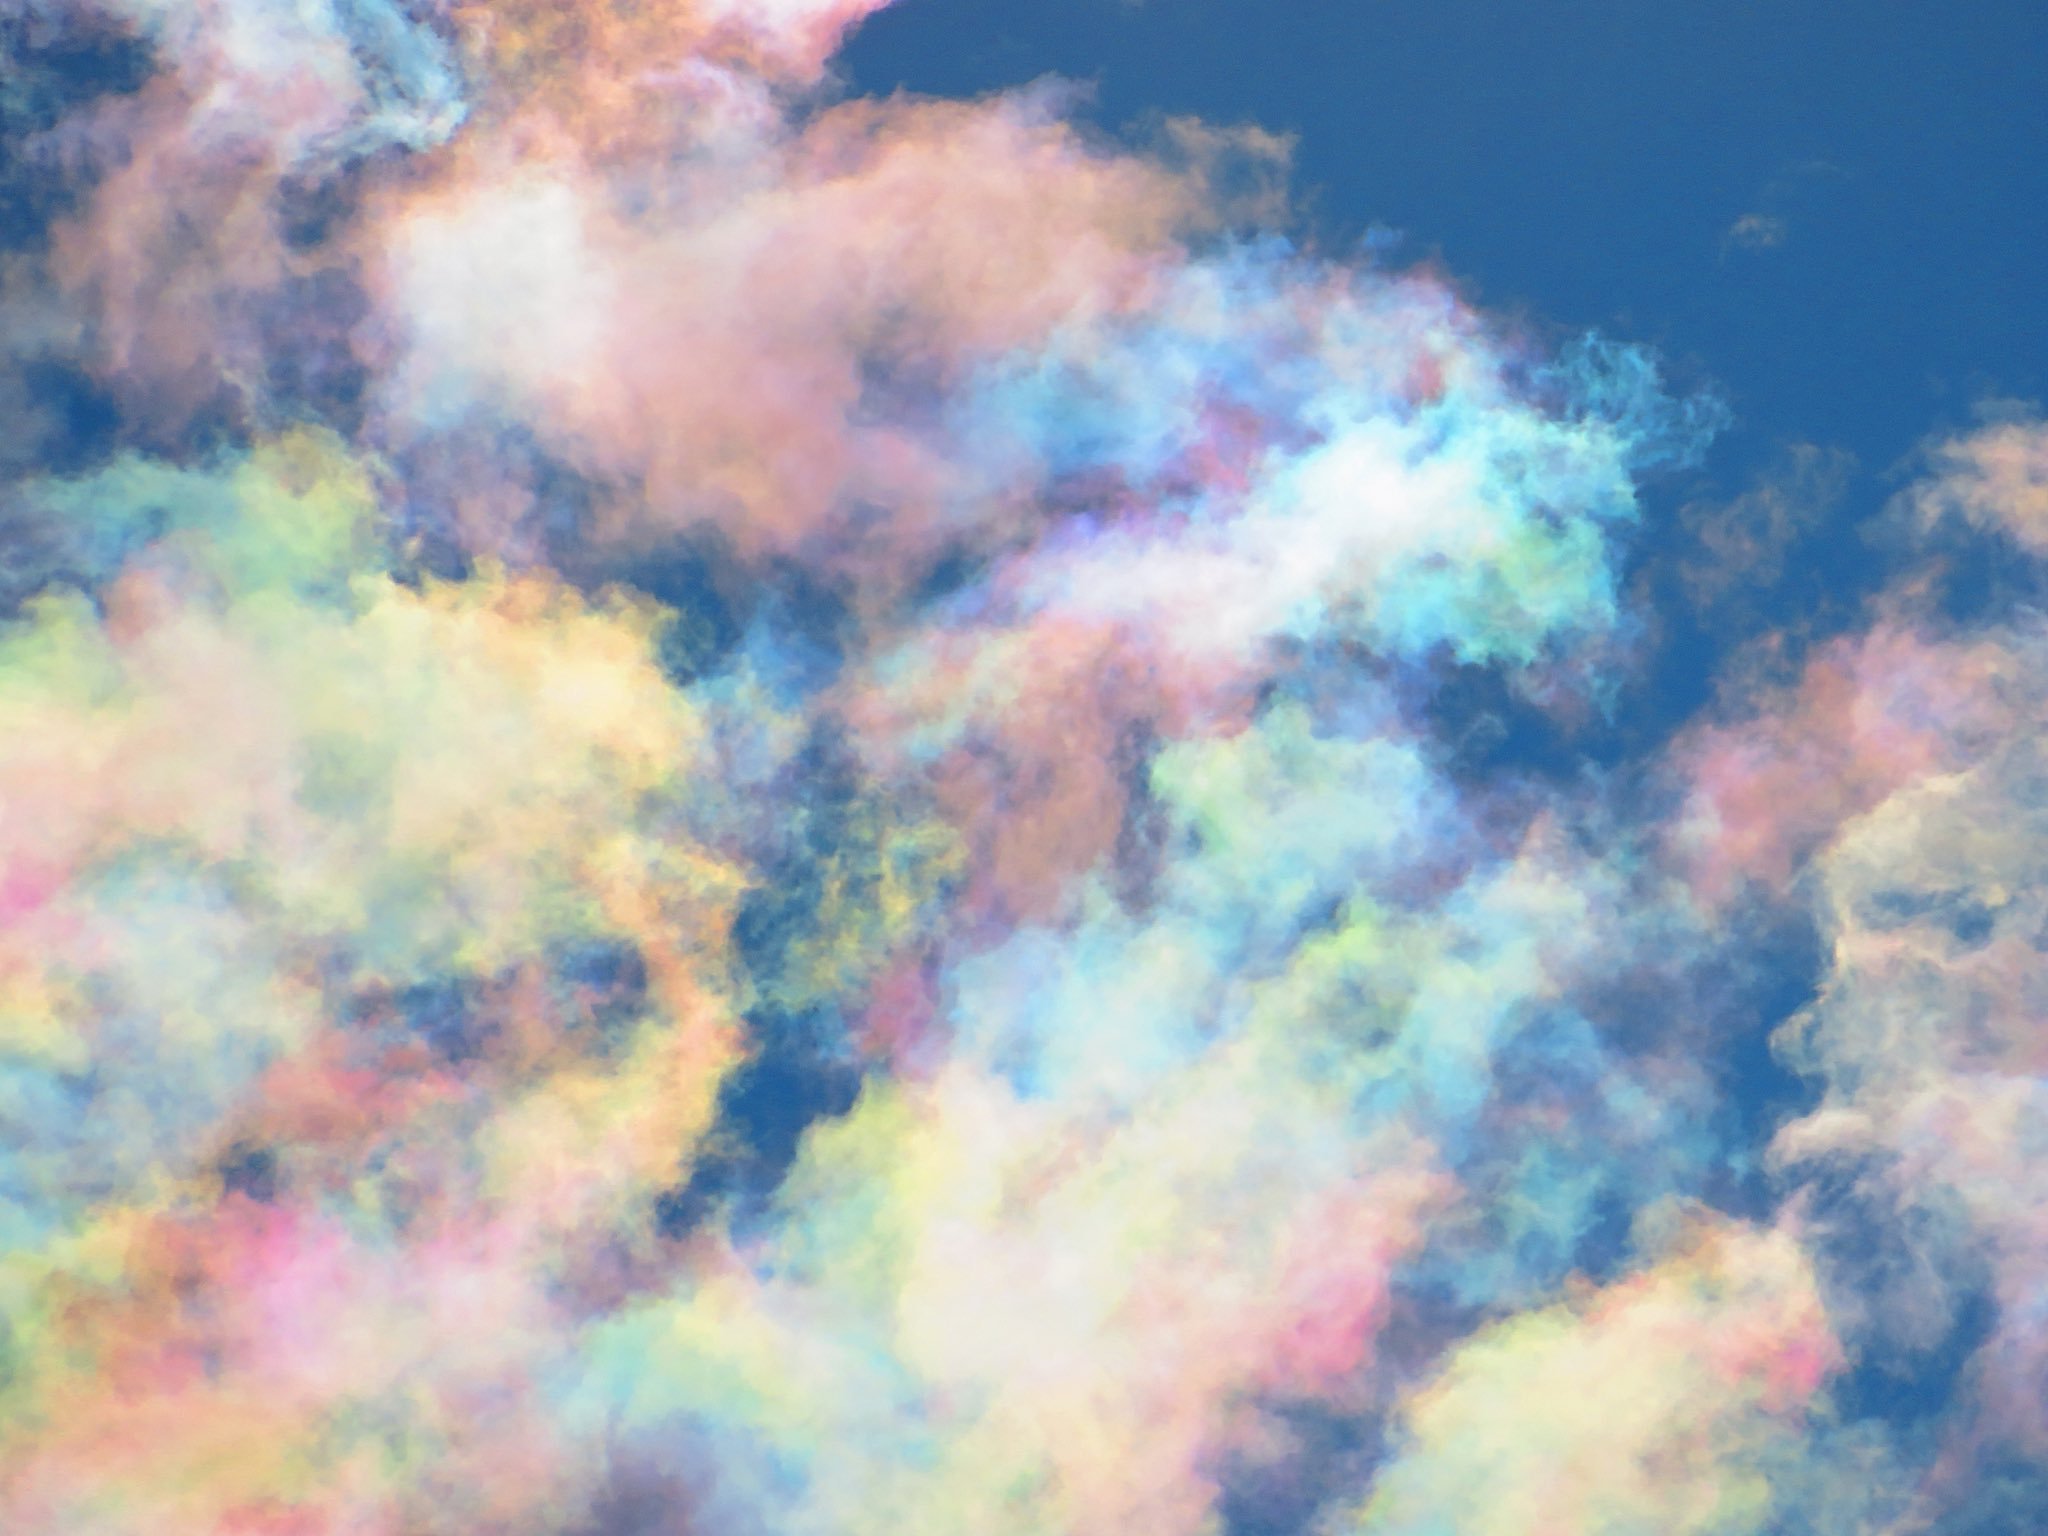 【空】なんとも美しい「彩雲」を発見。こんな綺麗なものが自然に発生するのか・・・